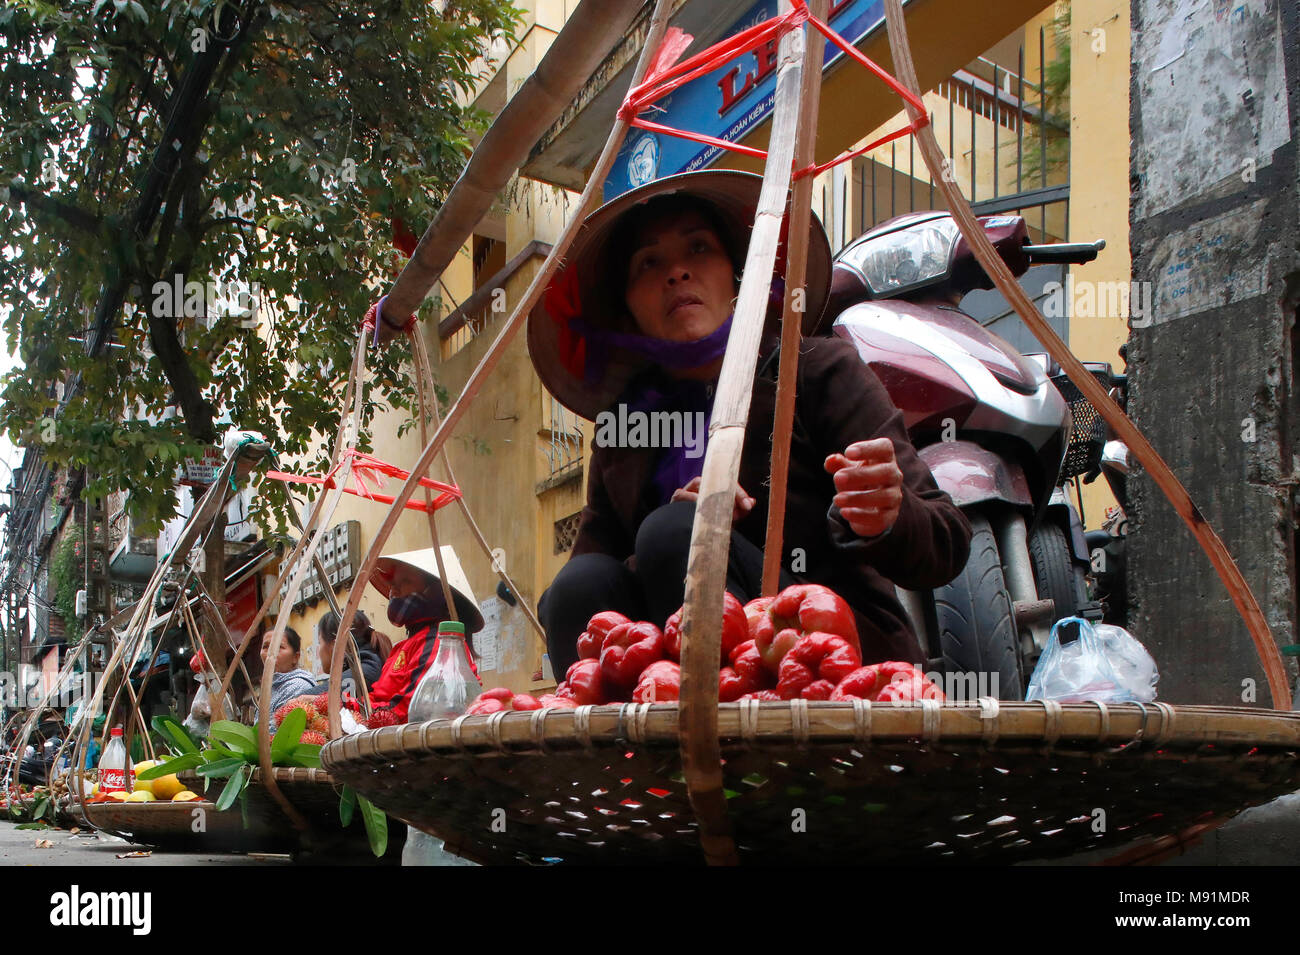 Tipica strada del quartiere vecchio di Hanoi. Donna vendita di verdura. Il Vietnam. Foto Stock